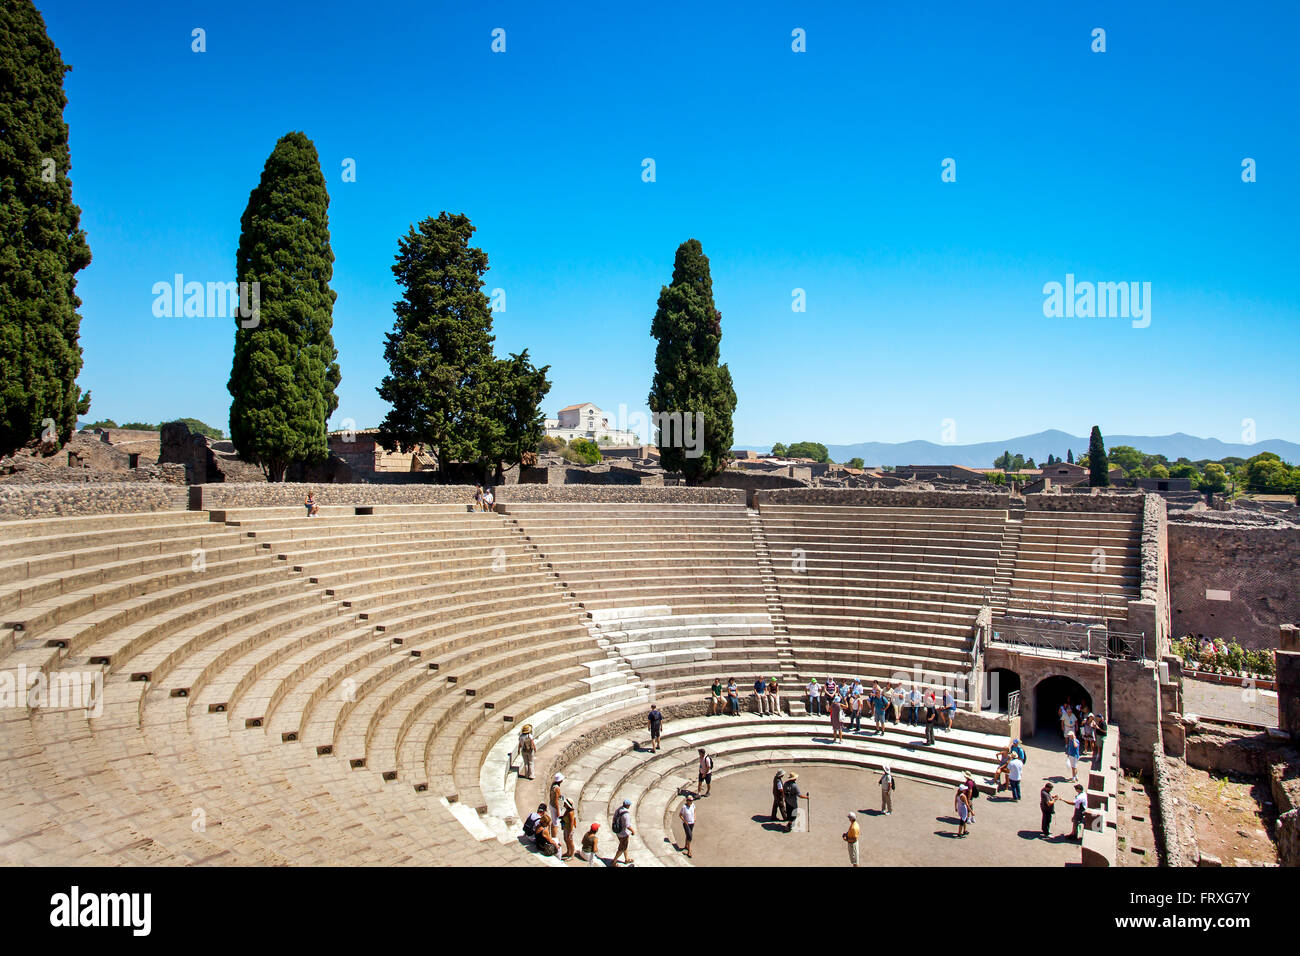 La UNESCO sitio arqueológico de Pompeya, Nápoles, la Bahía de Nápoles, Campania, Italia Foto de stock